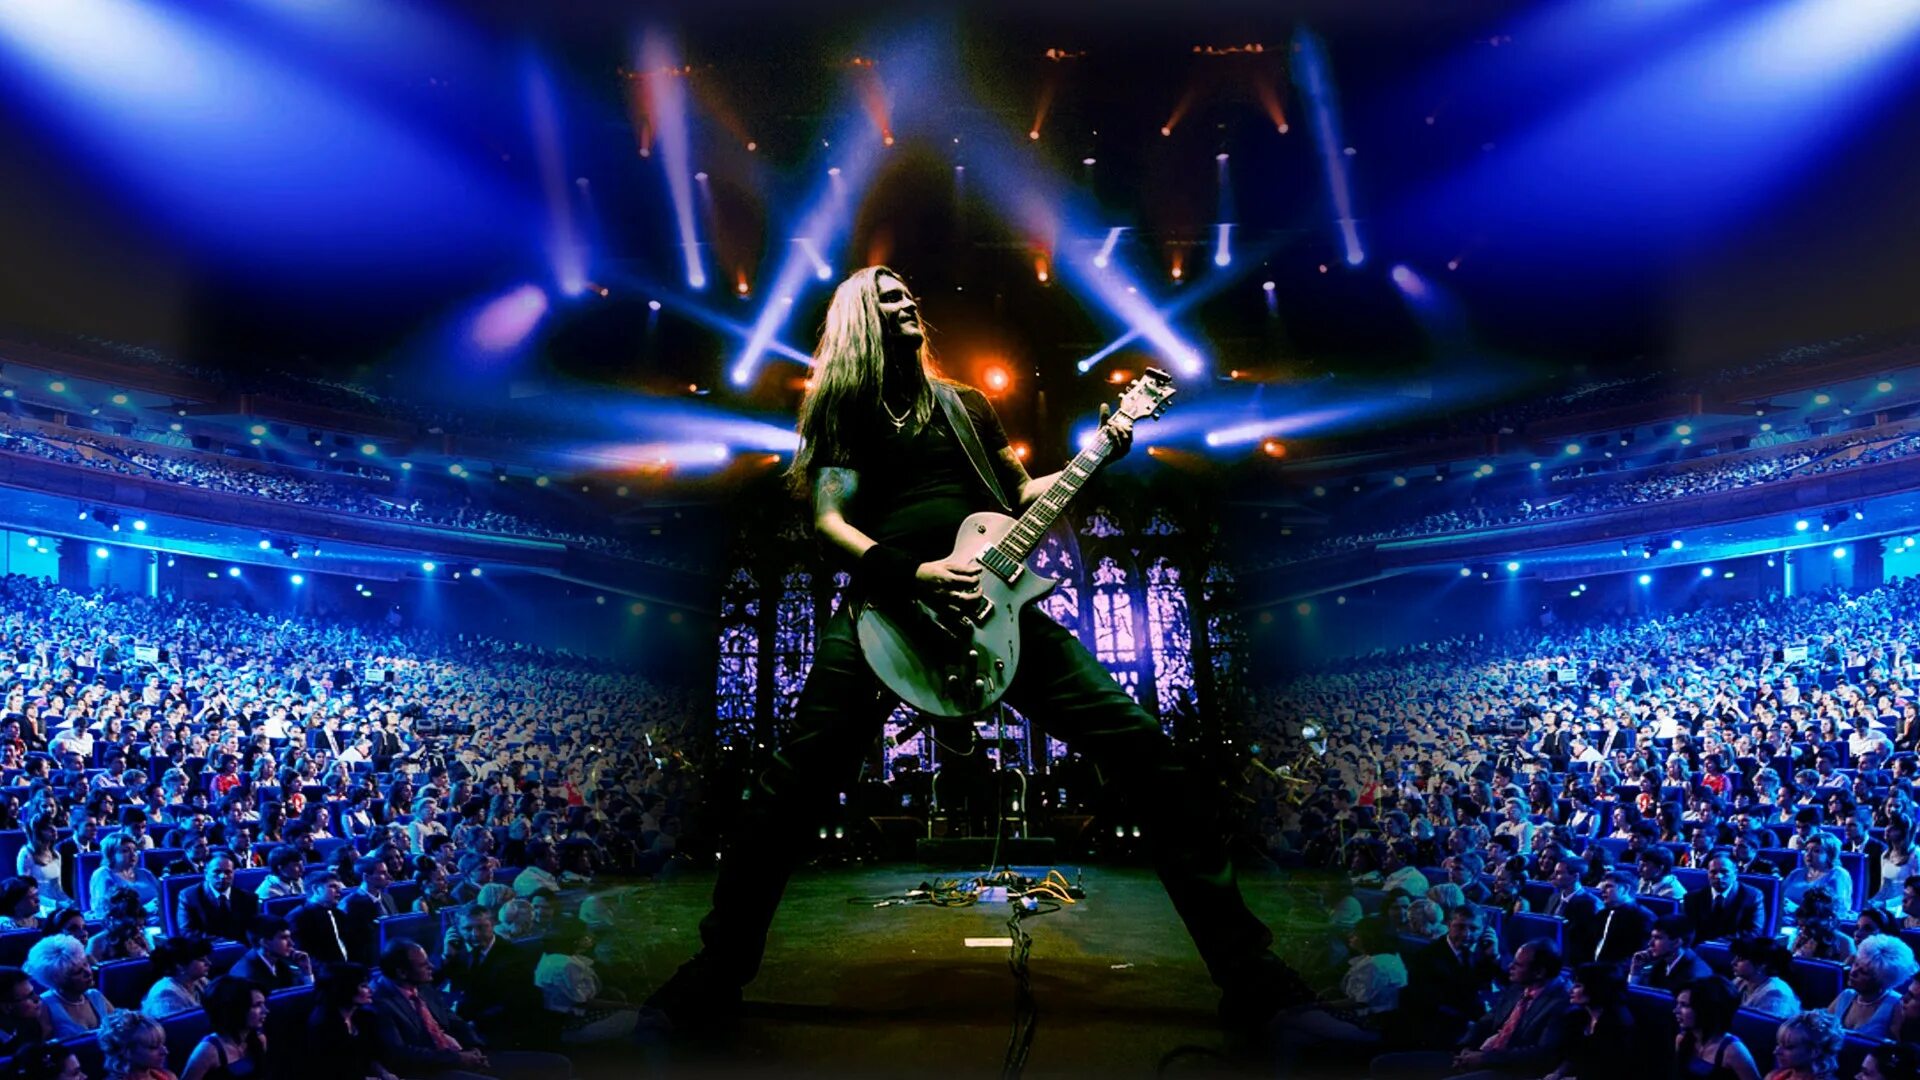 Концерт металлика трибьют. Metallica show s&m Tribute с симфоническим оркестром. Металлика 2022 концерт. Металлика Кремлевский дворец. Metallica show